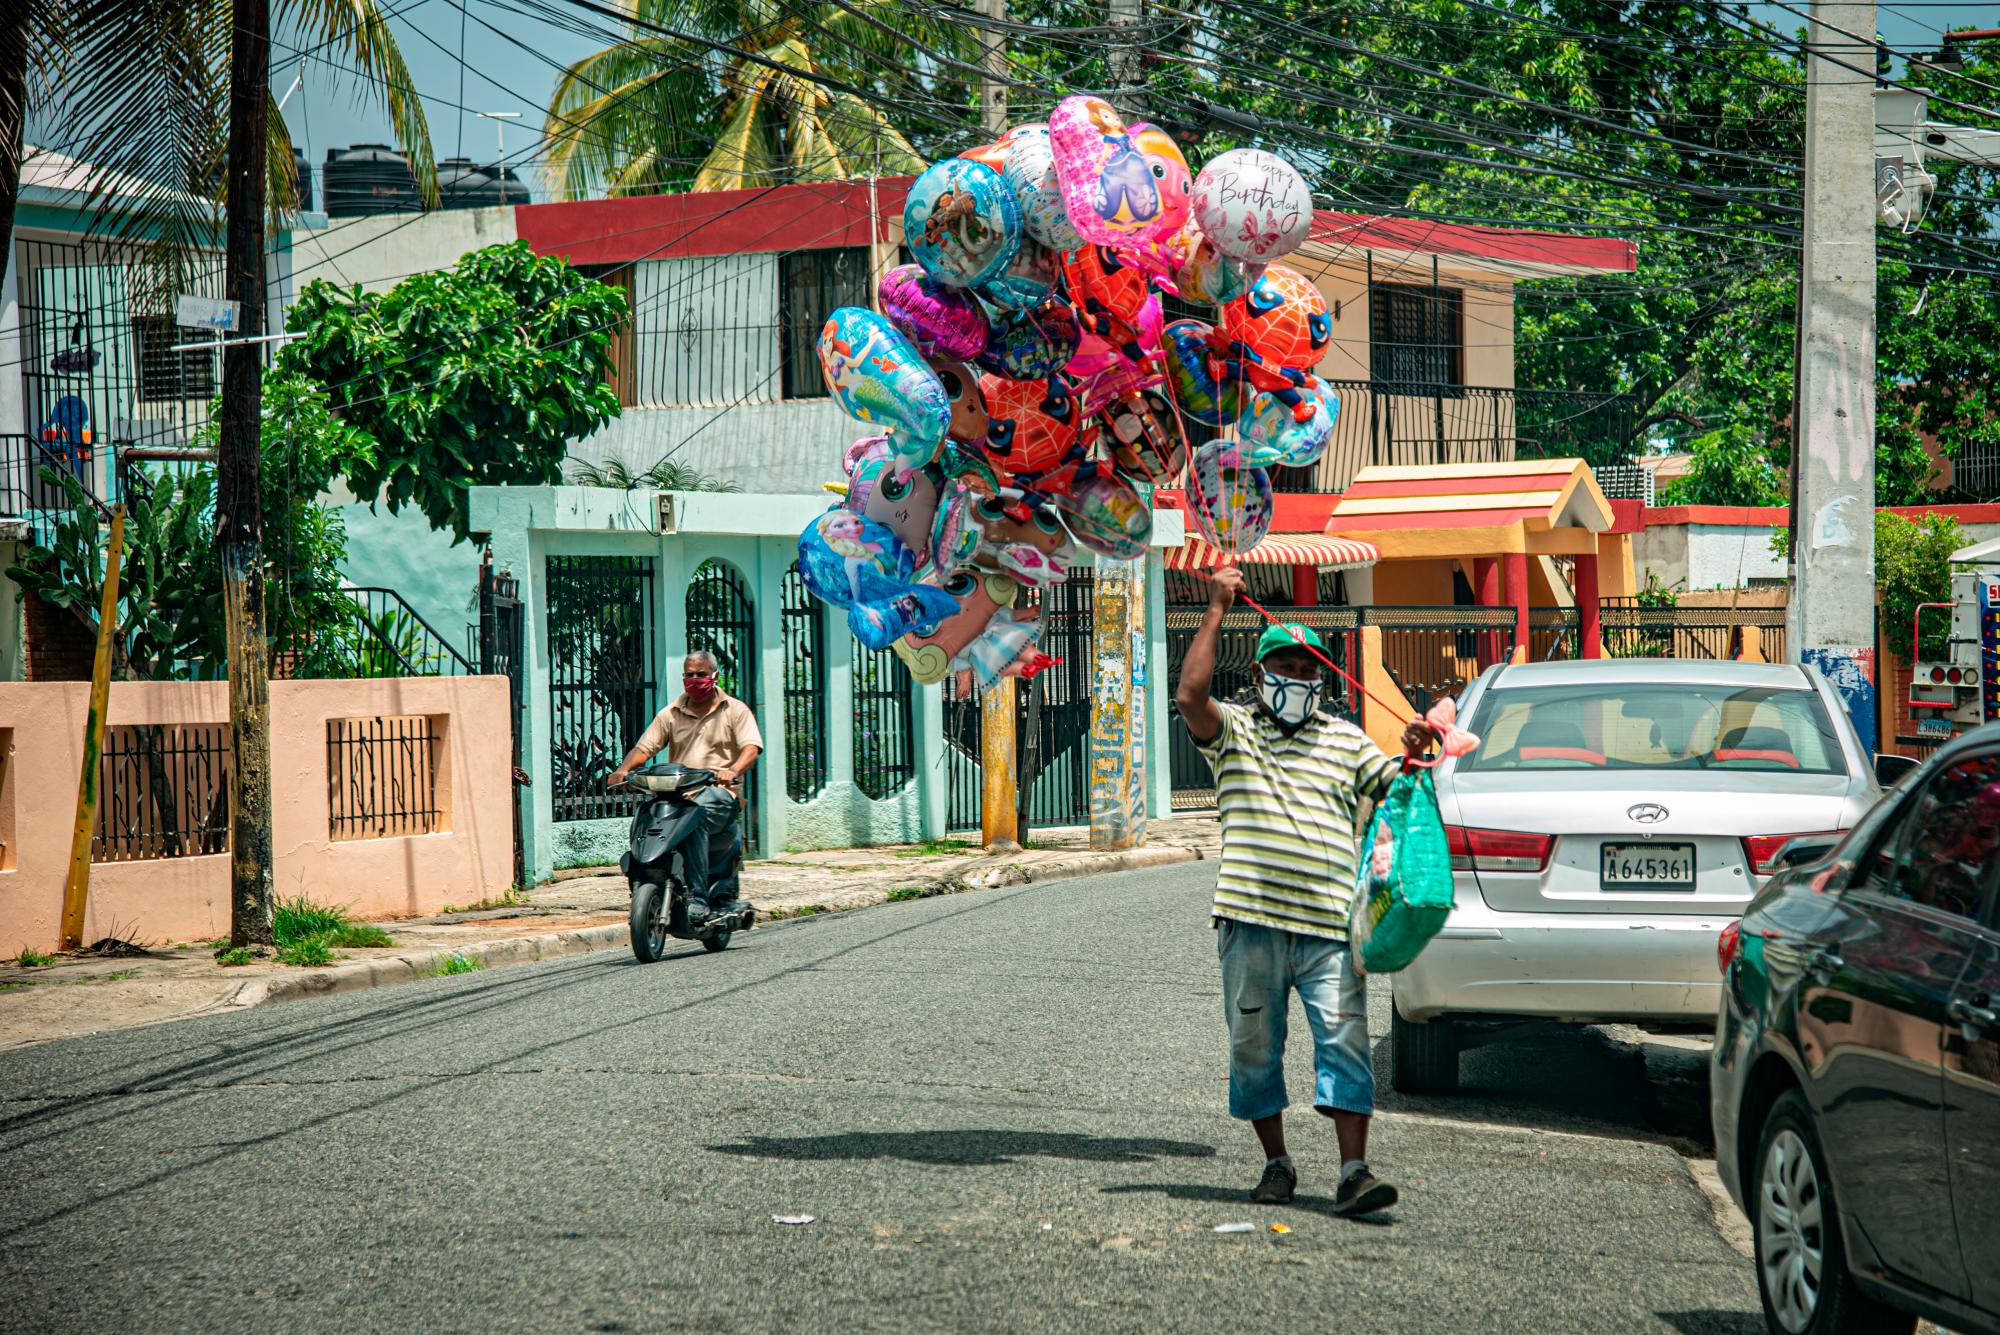 En la imagen un hombre carga globos para niños llenos de helio. El vendedor transita por las calles de los barrios buscando vender juguete como medio de subsistencia.